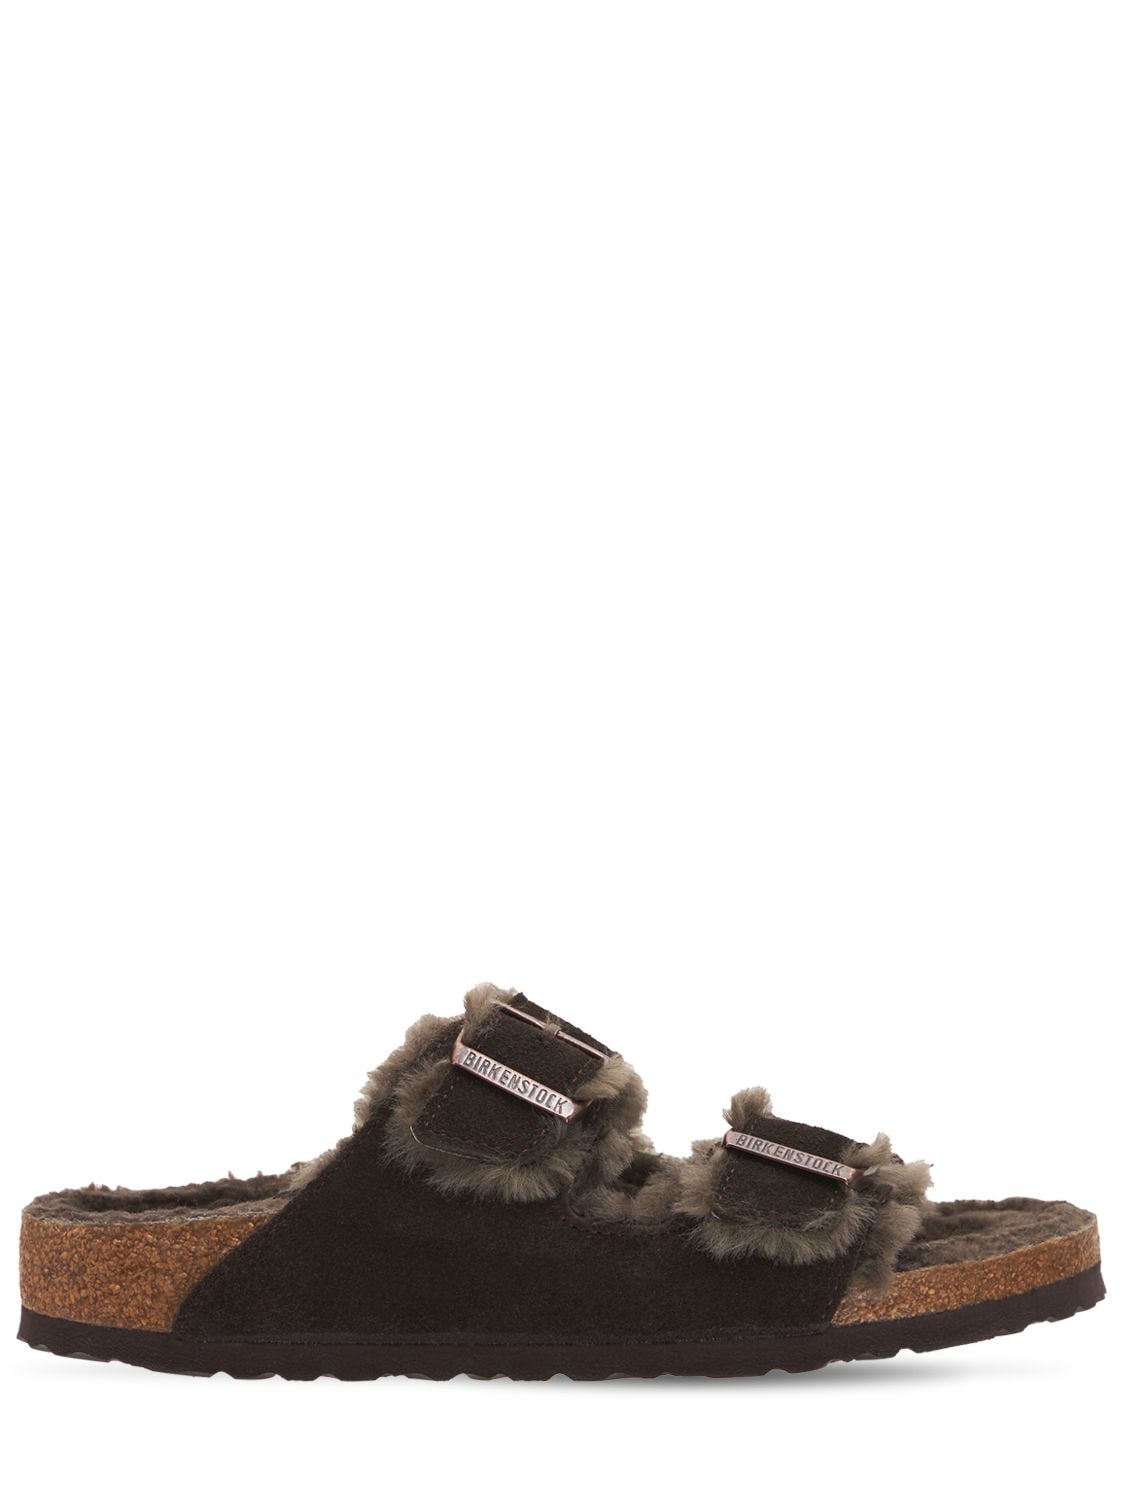 Birkenstock Arizona Shearling & Suede Sandals In Dark Brown